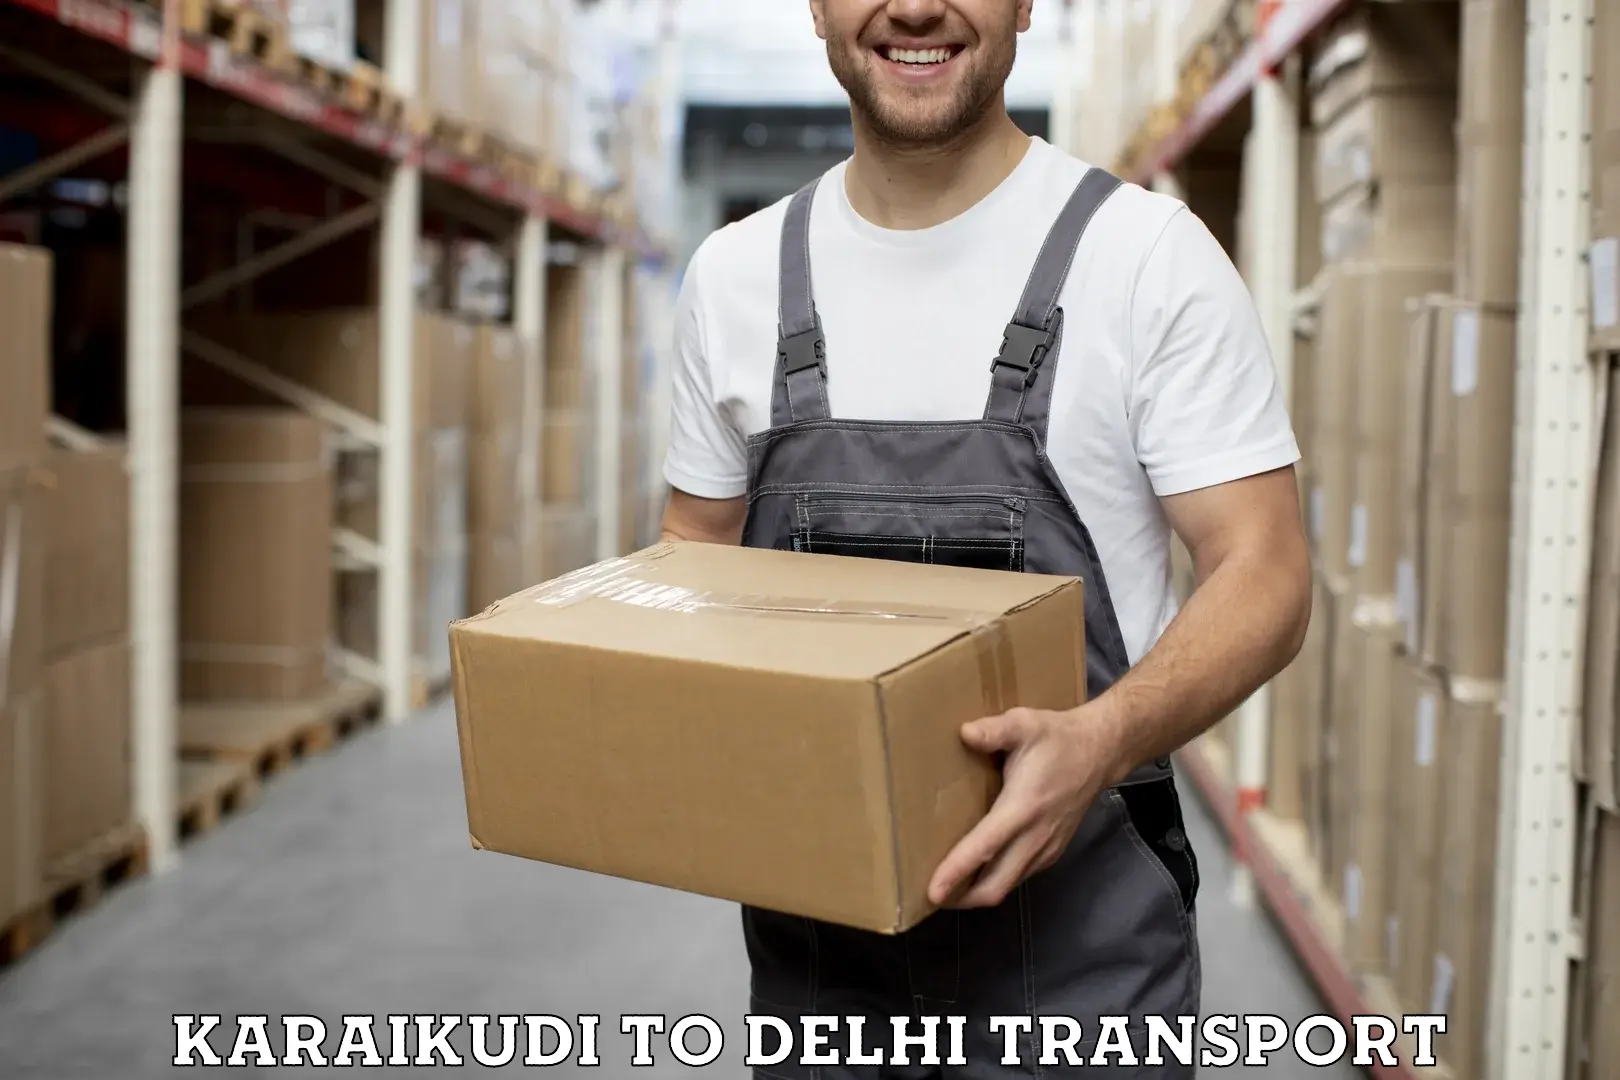 Express transport services Karaikudi to NIT Delhi